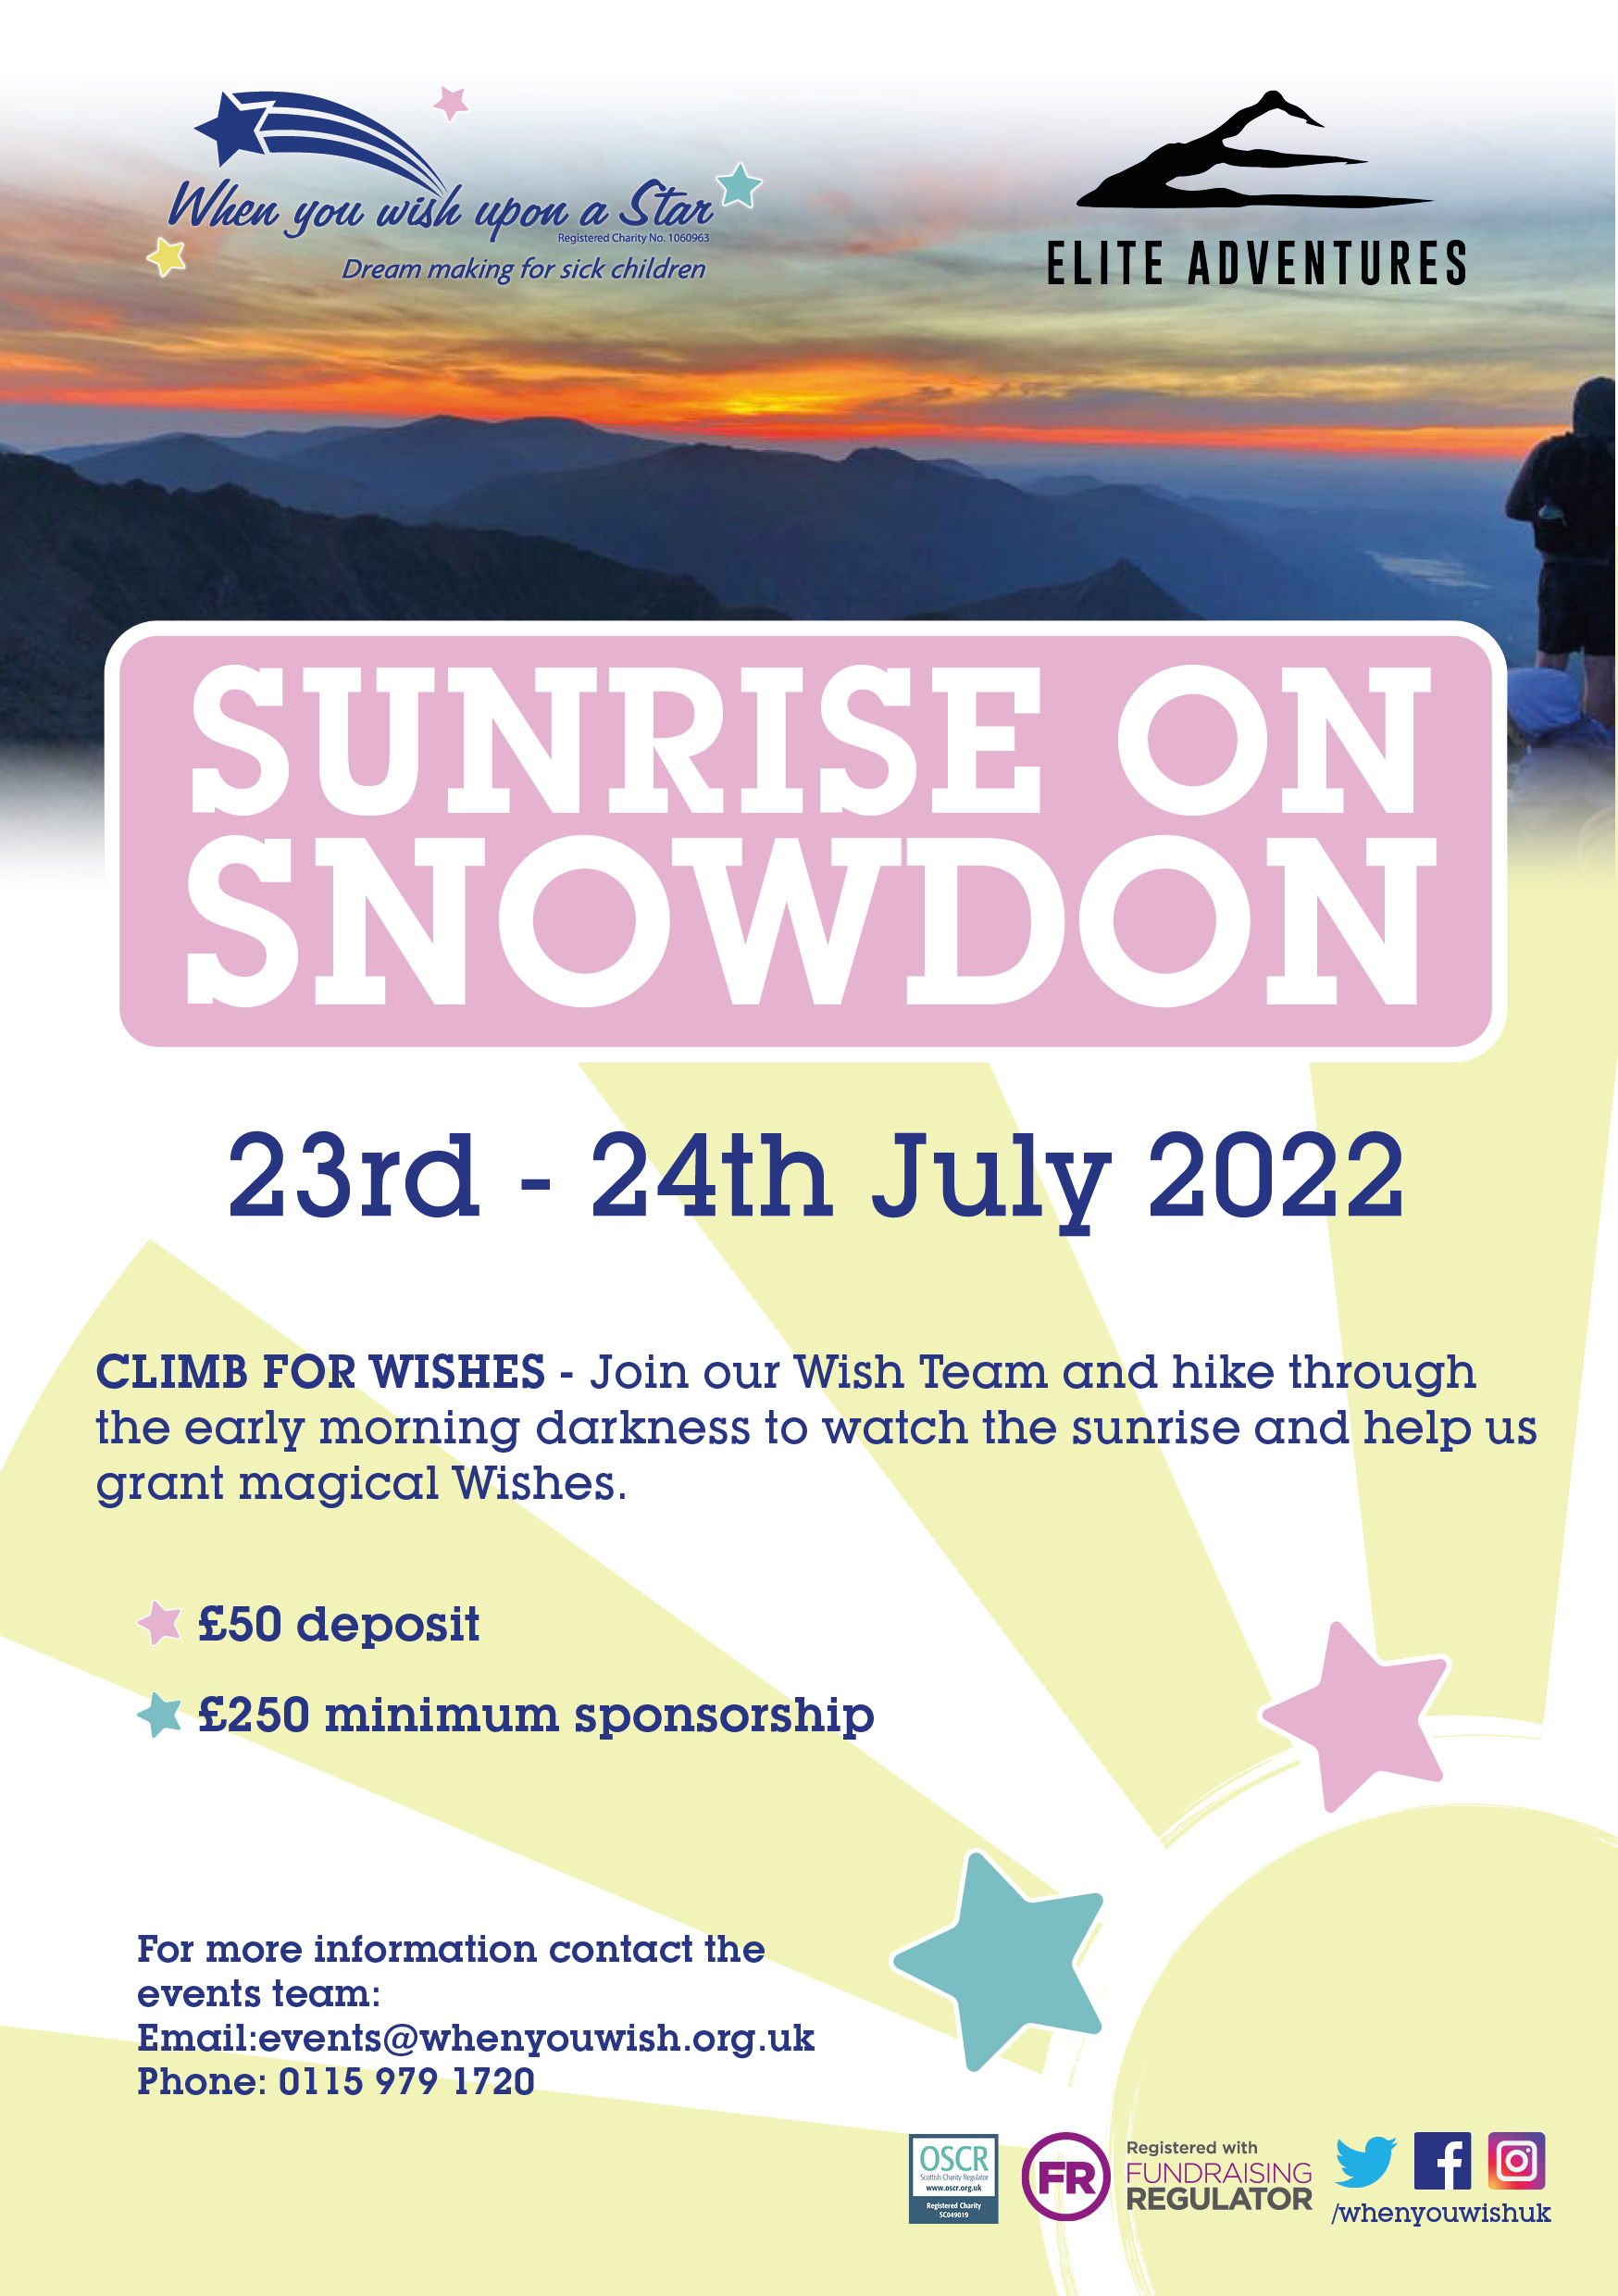 SunriseOnSnowdon 2022